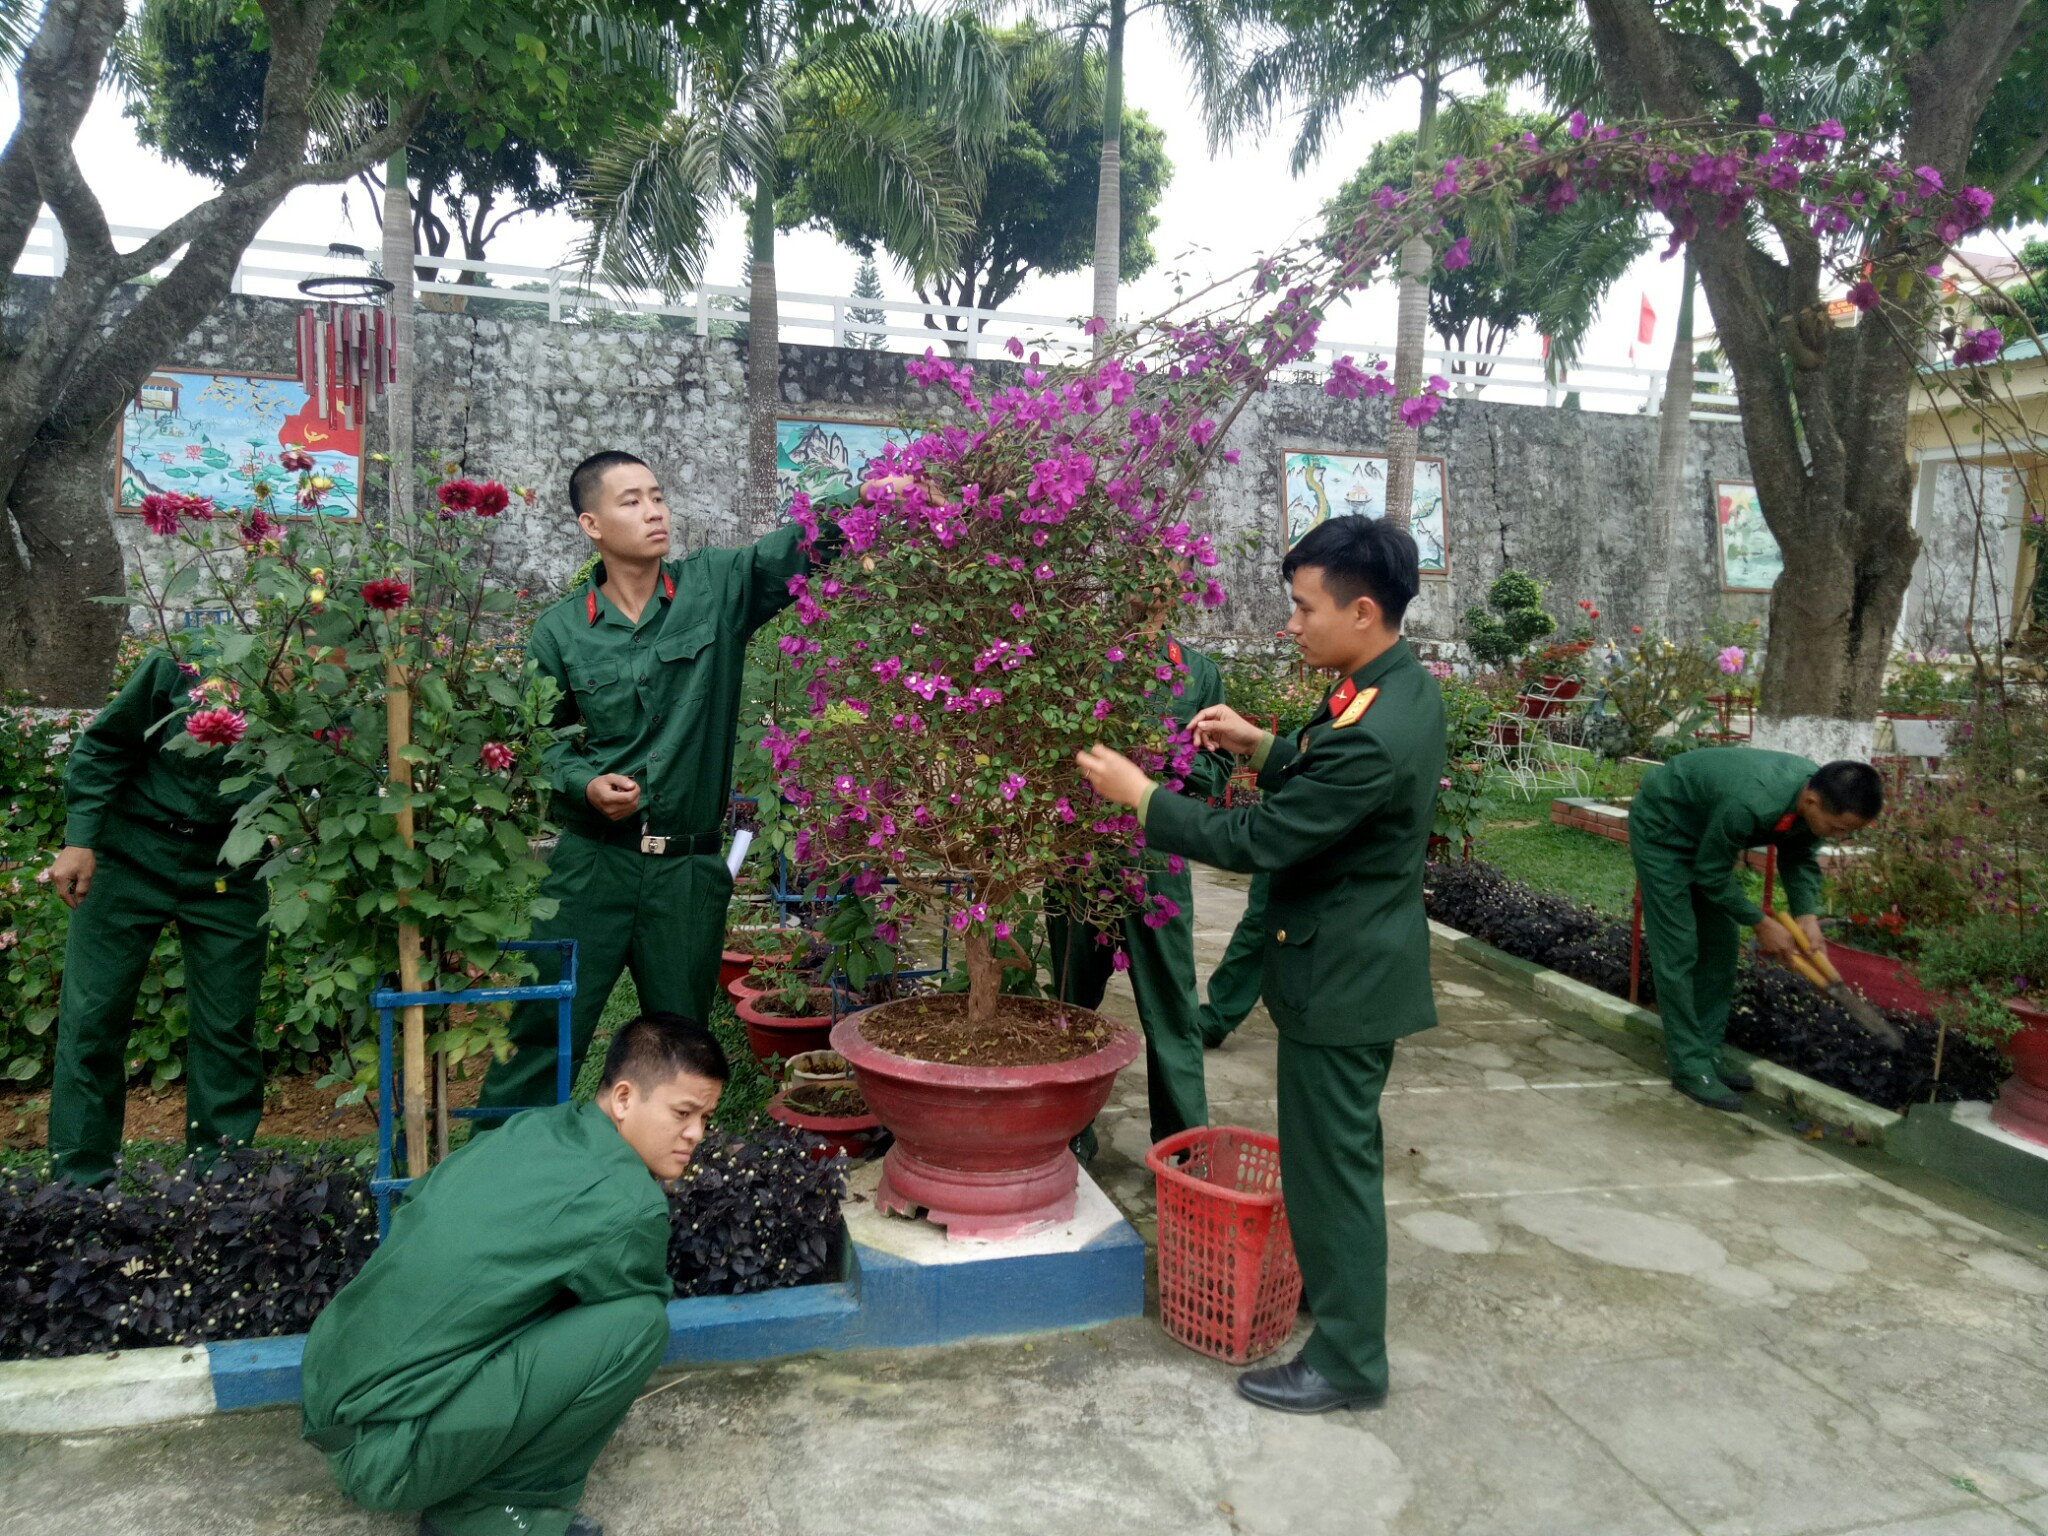 Và cùng cán bộ chăm sóc bồn hoa cây cảnh tạo cảnh quan xanh - sạch - đẹp cho đơn vị huấn luyện. Ảnh: Tường Hiếu